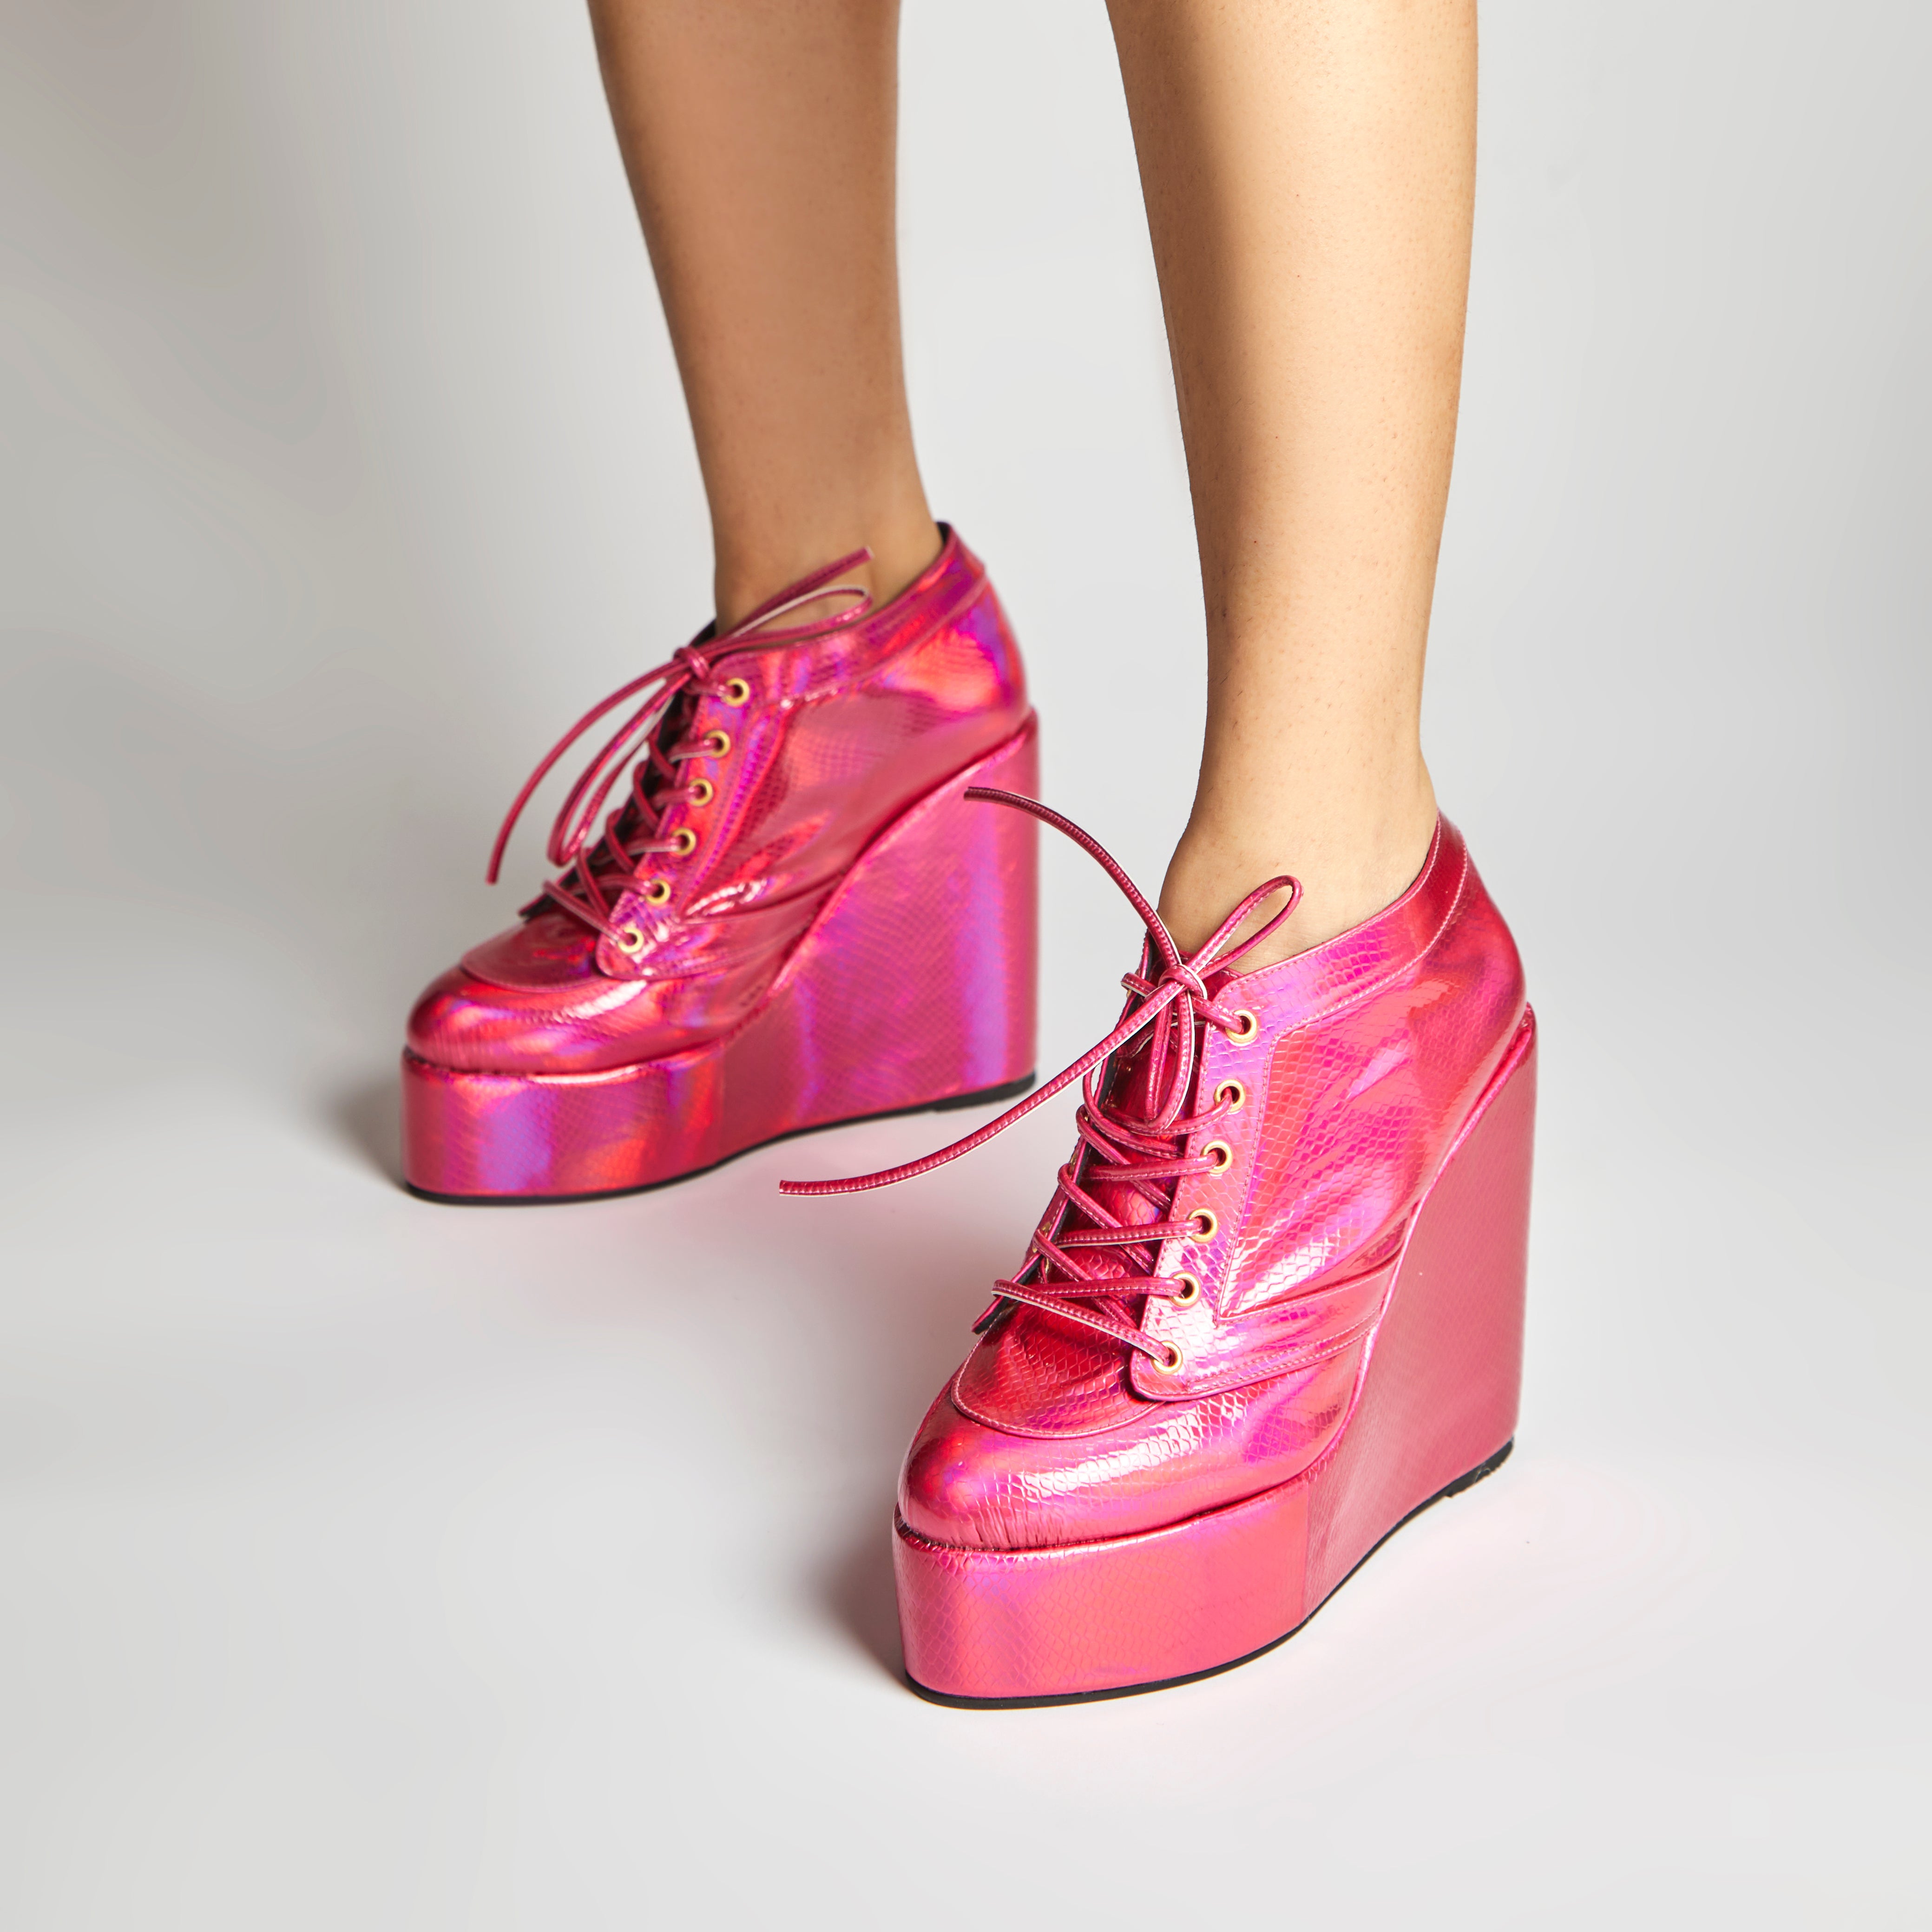 Sneaker Wedges (Pink)